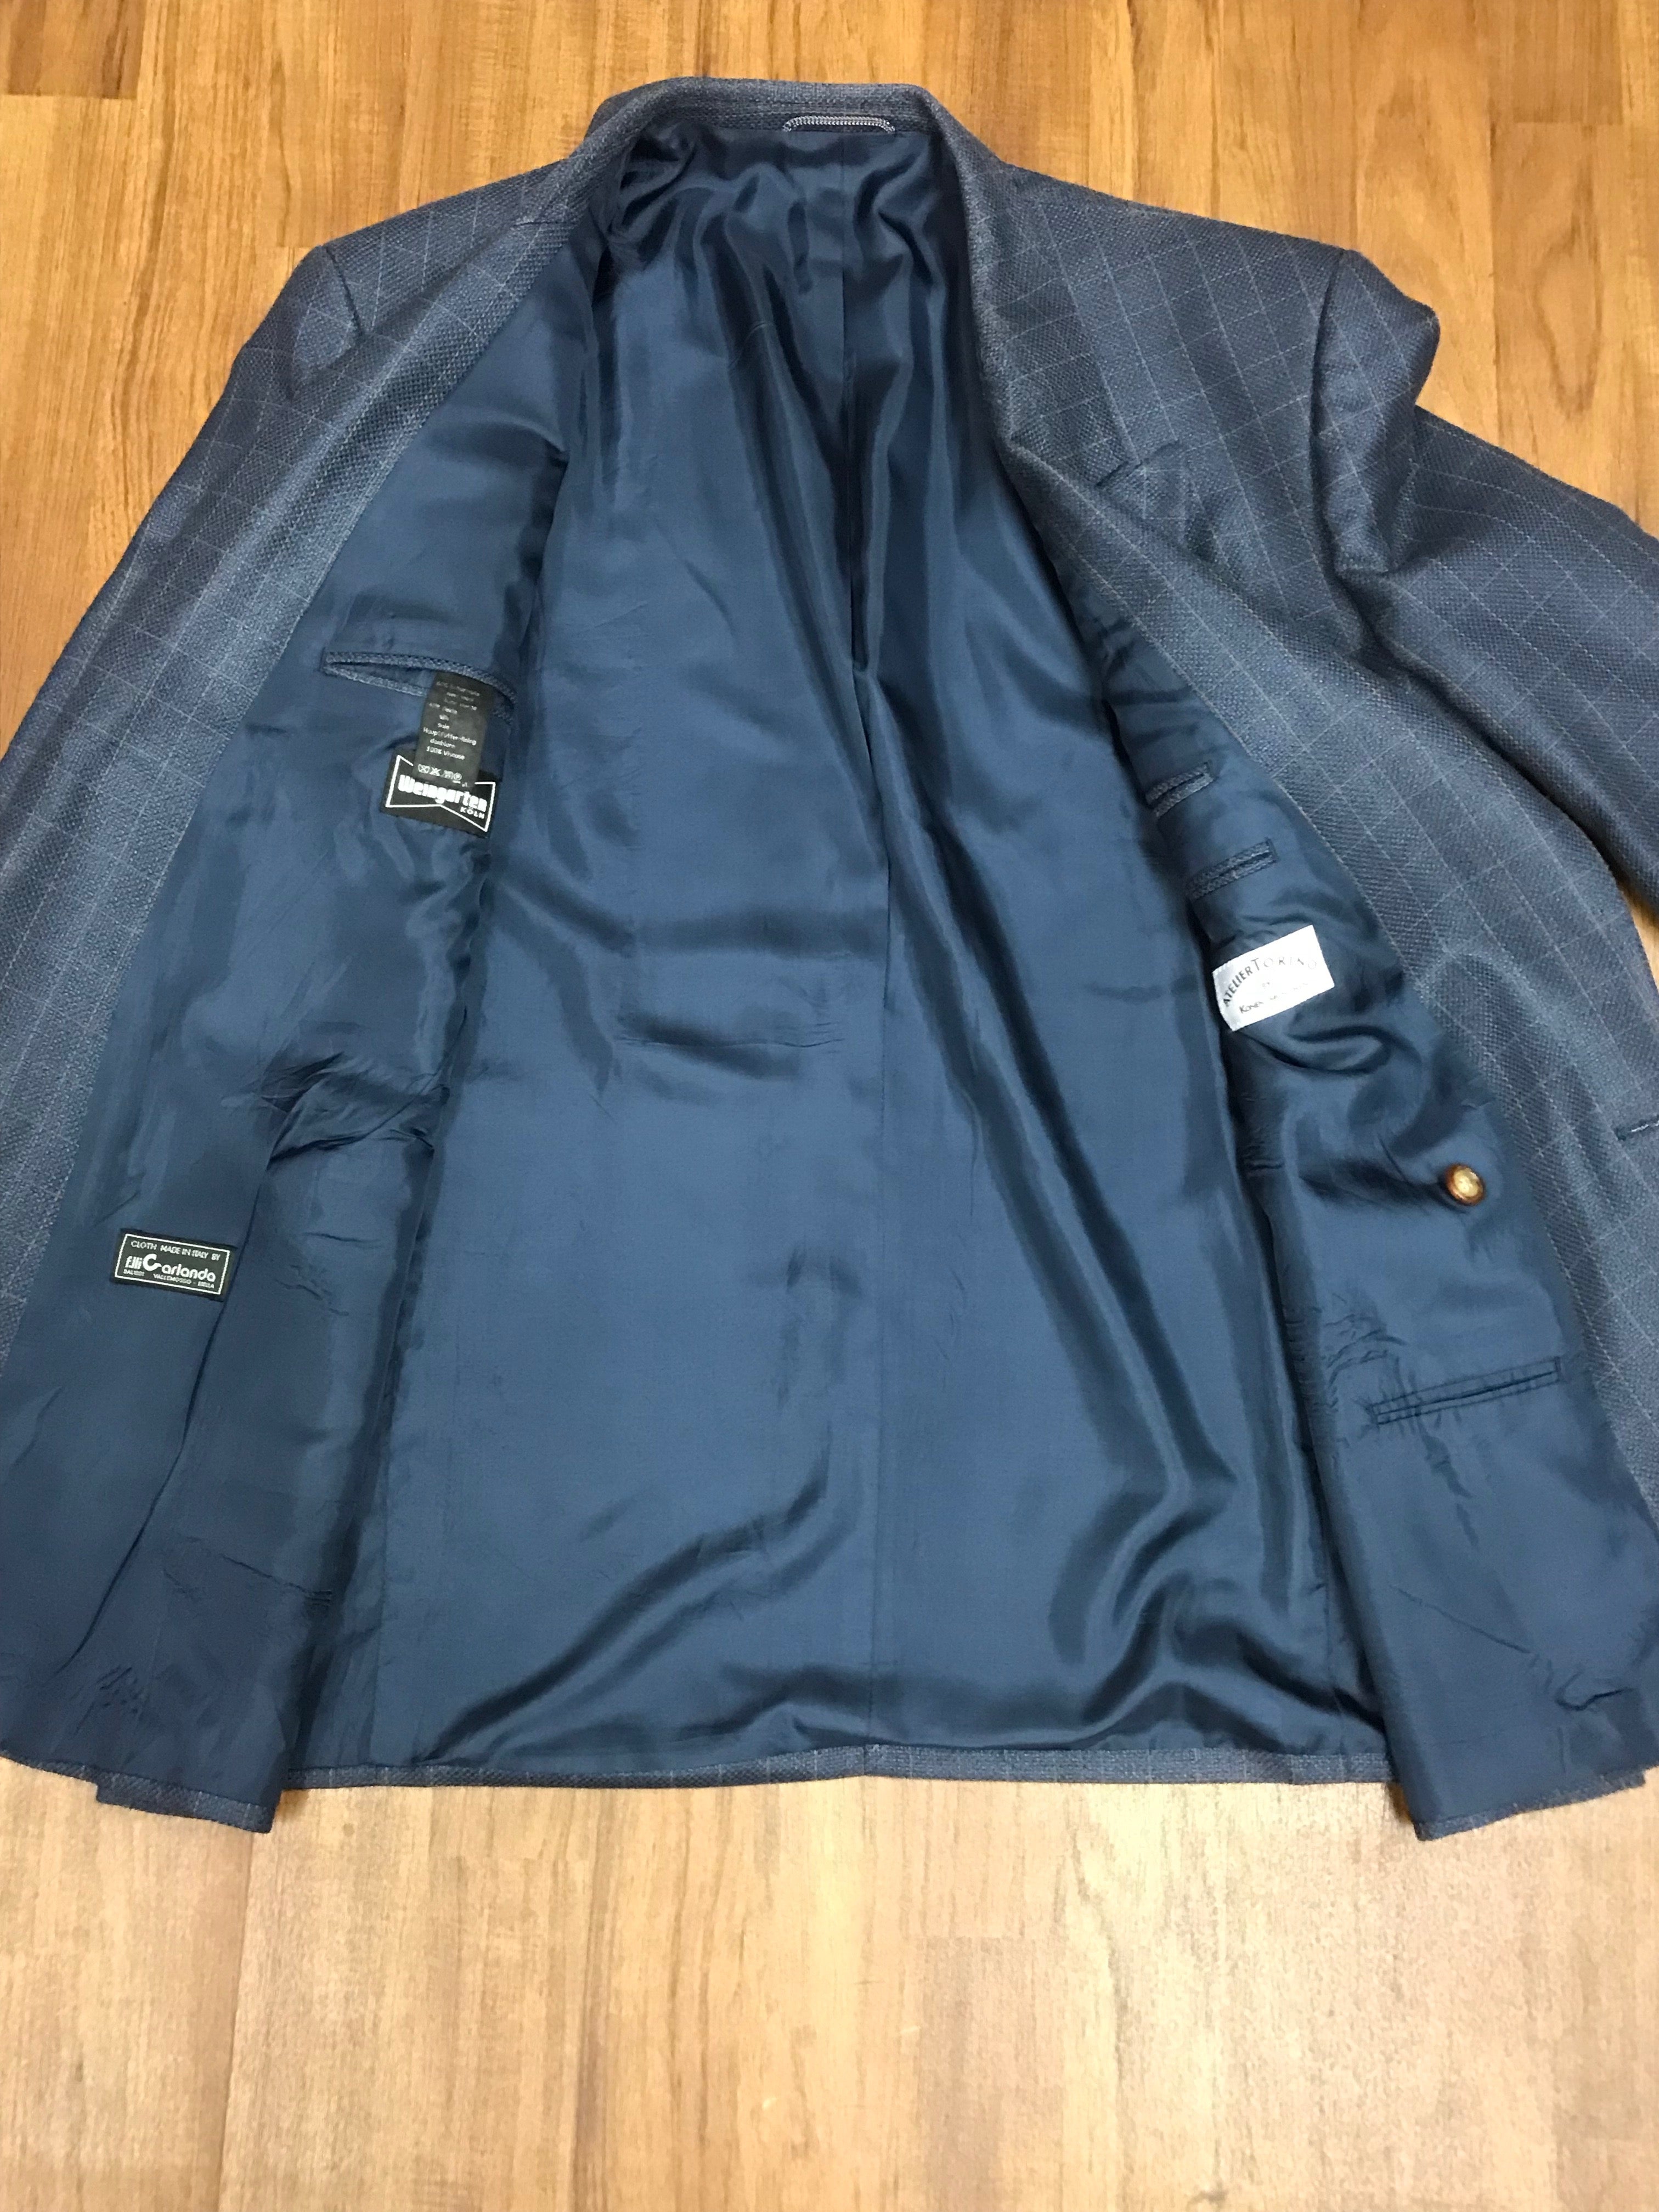 Vintage Sakko Zweireiher Jacket Blazer  Gr.58